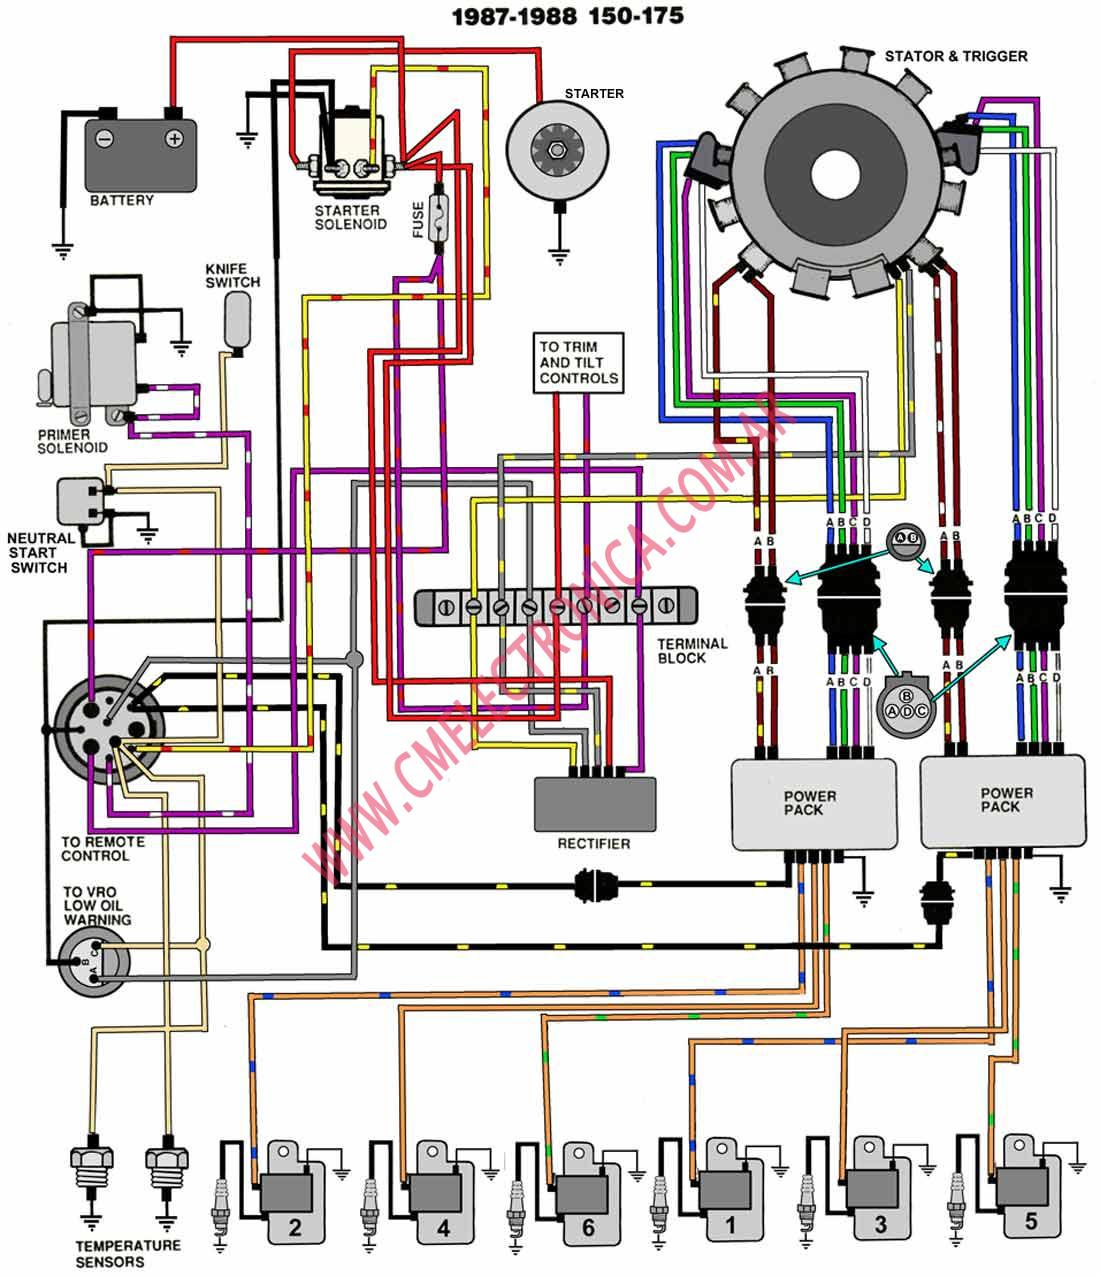 1991 Johnson 25 Hp Wiring Diagram - Wiring Diagram Schema